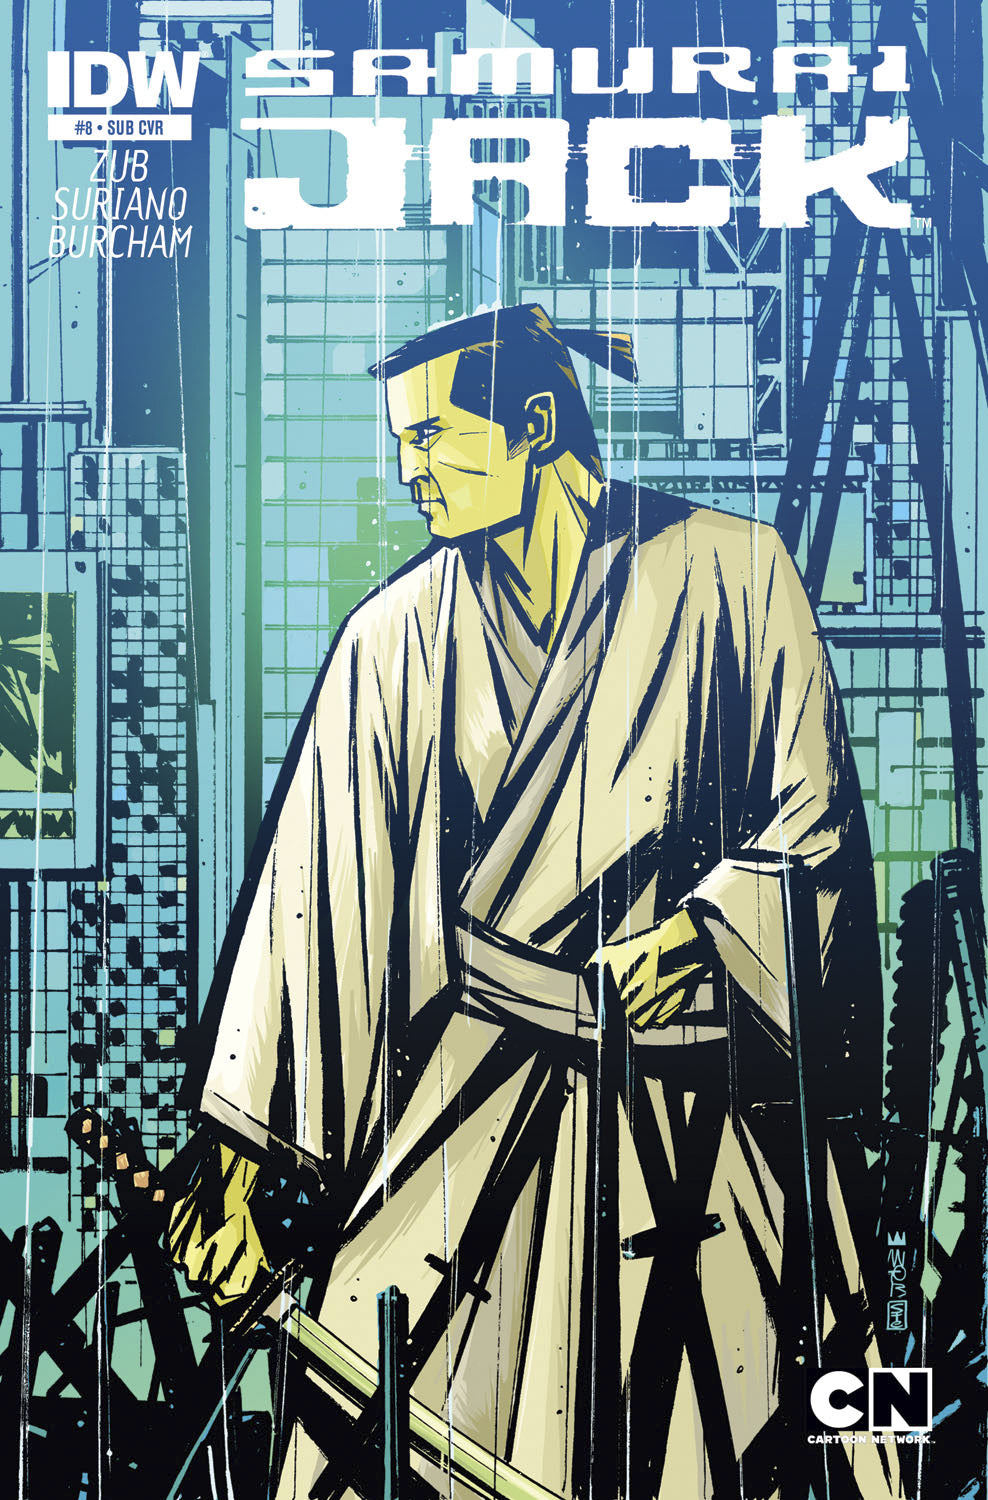 SAMURAI JACK #8 SUBSCRIPTION VAR | Game Master's Emporium (The New GME)